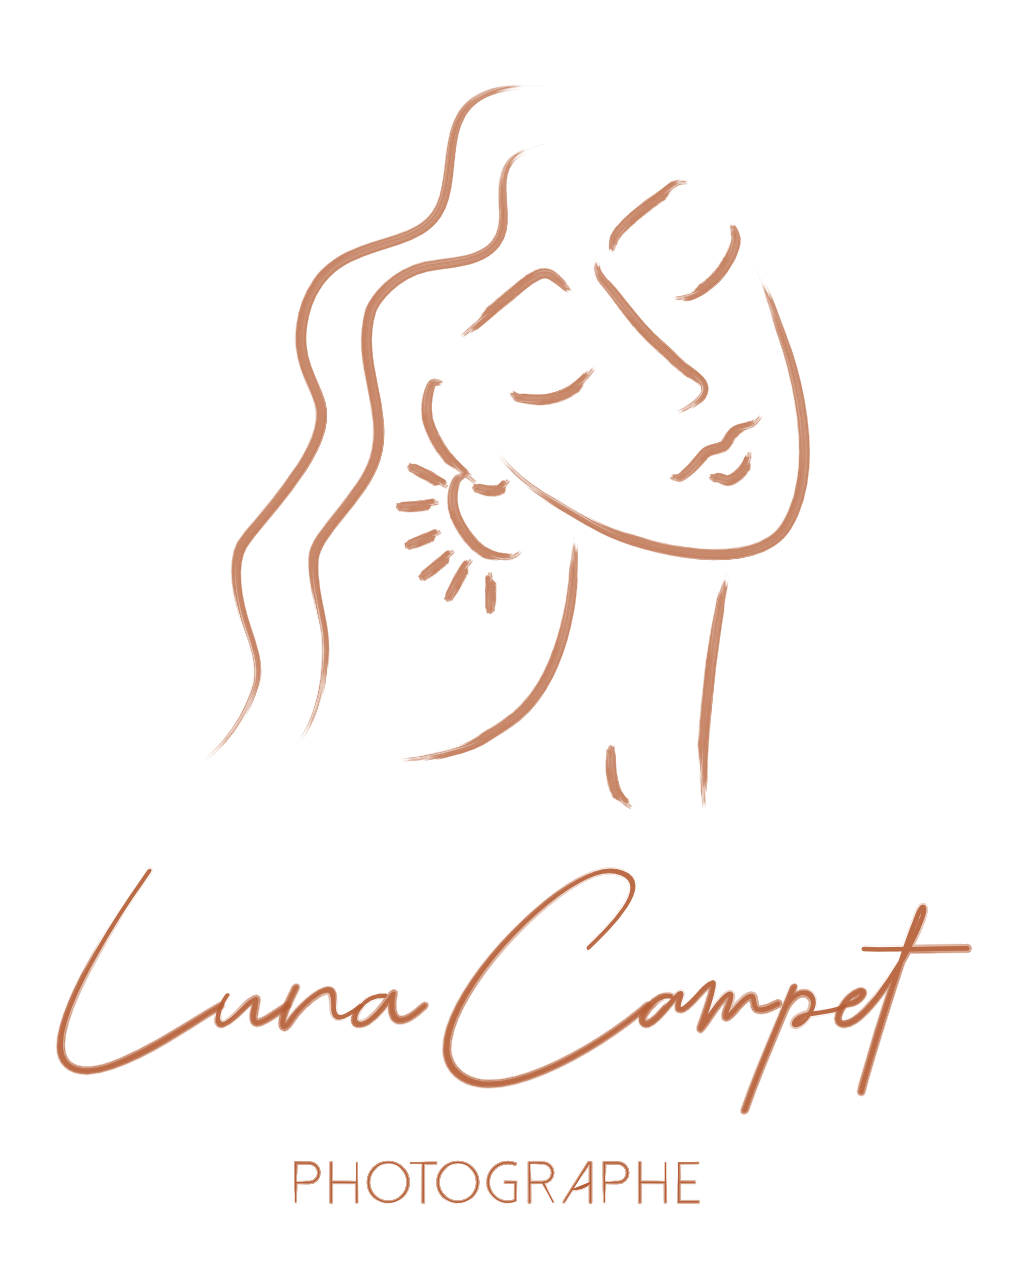 Luna Campet